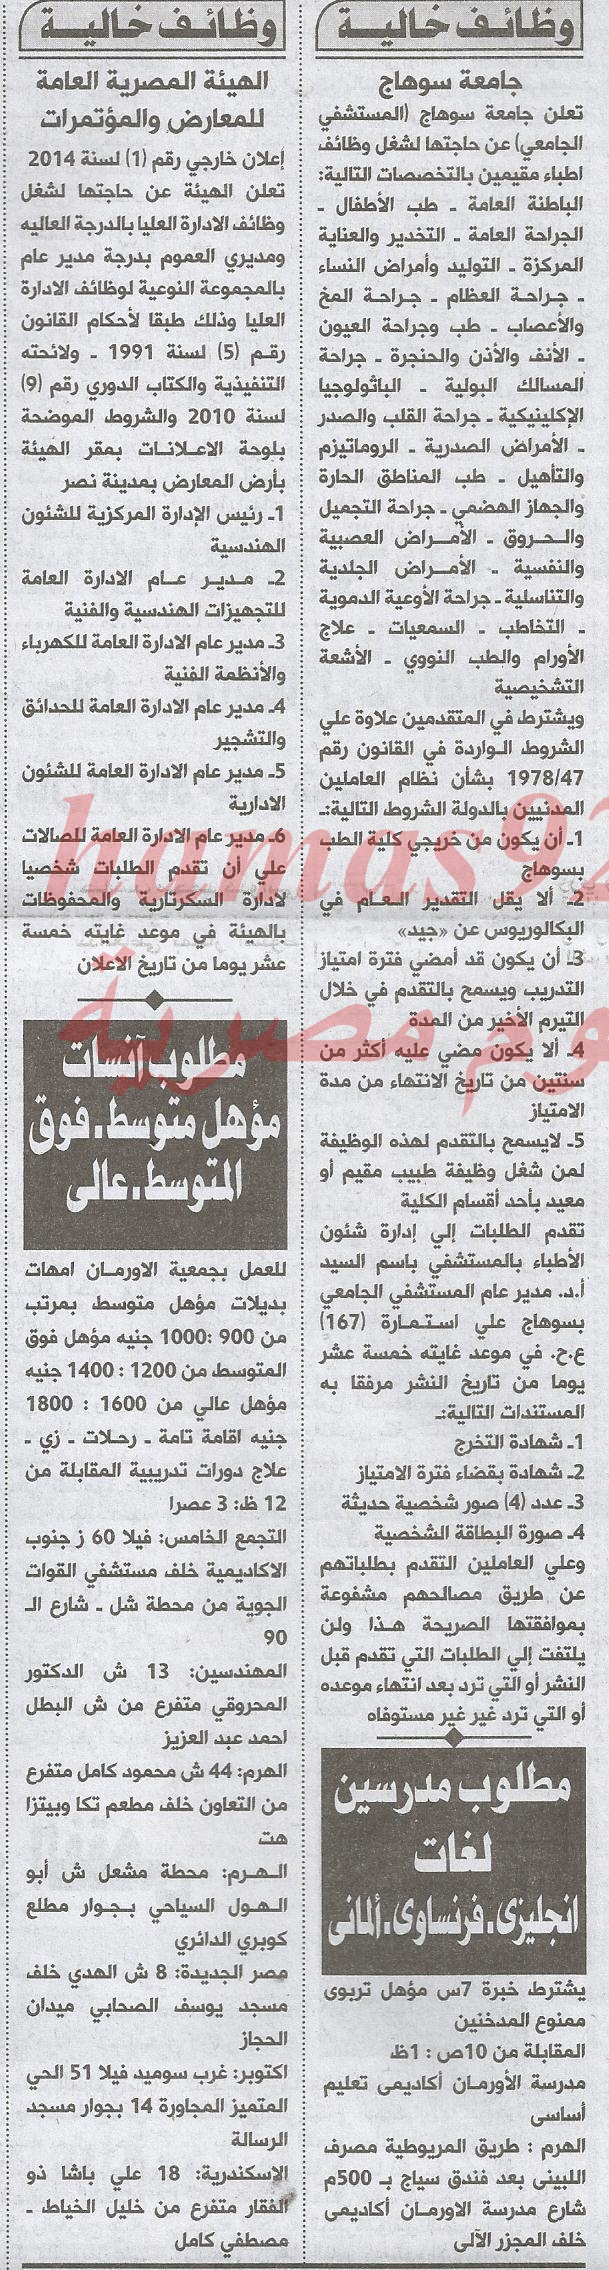 وظائف جريدة الاهرام اليوم الاثنين 27-1-2014 , وظائف خالية اليوم 27 يناير 2014